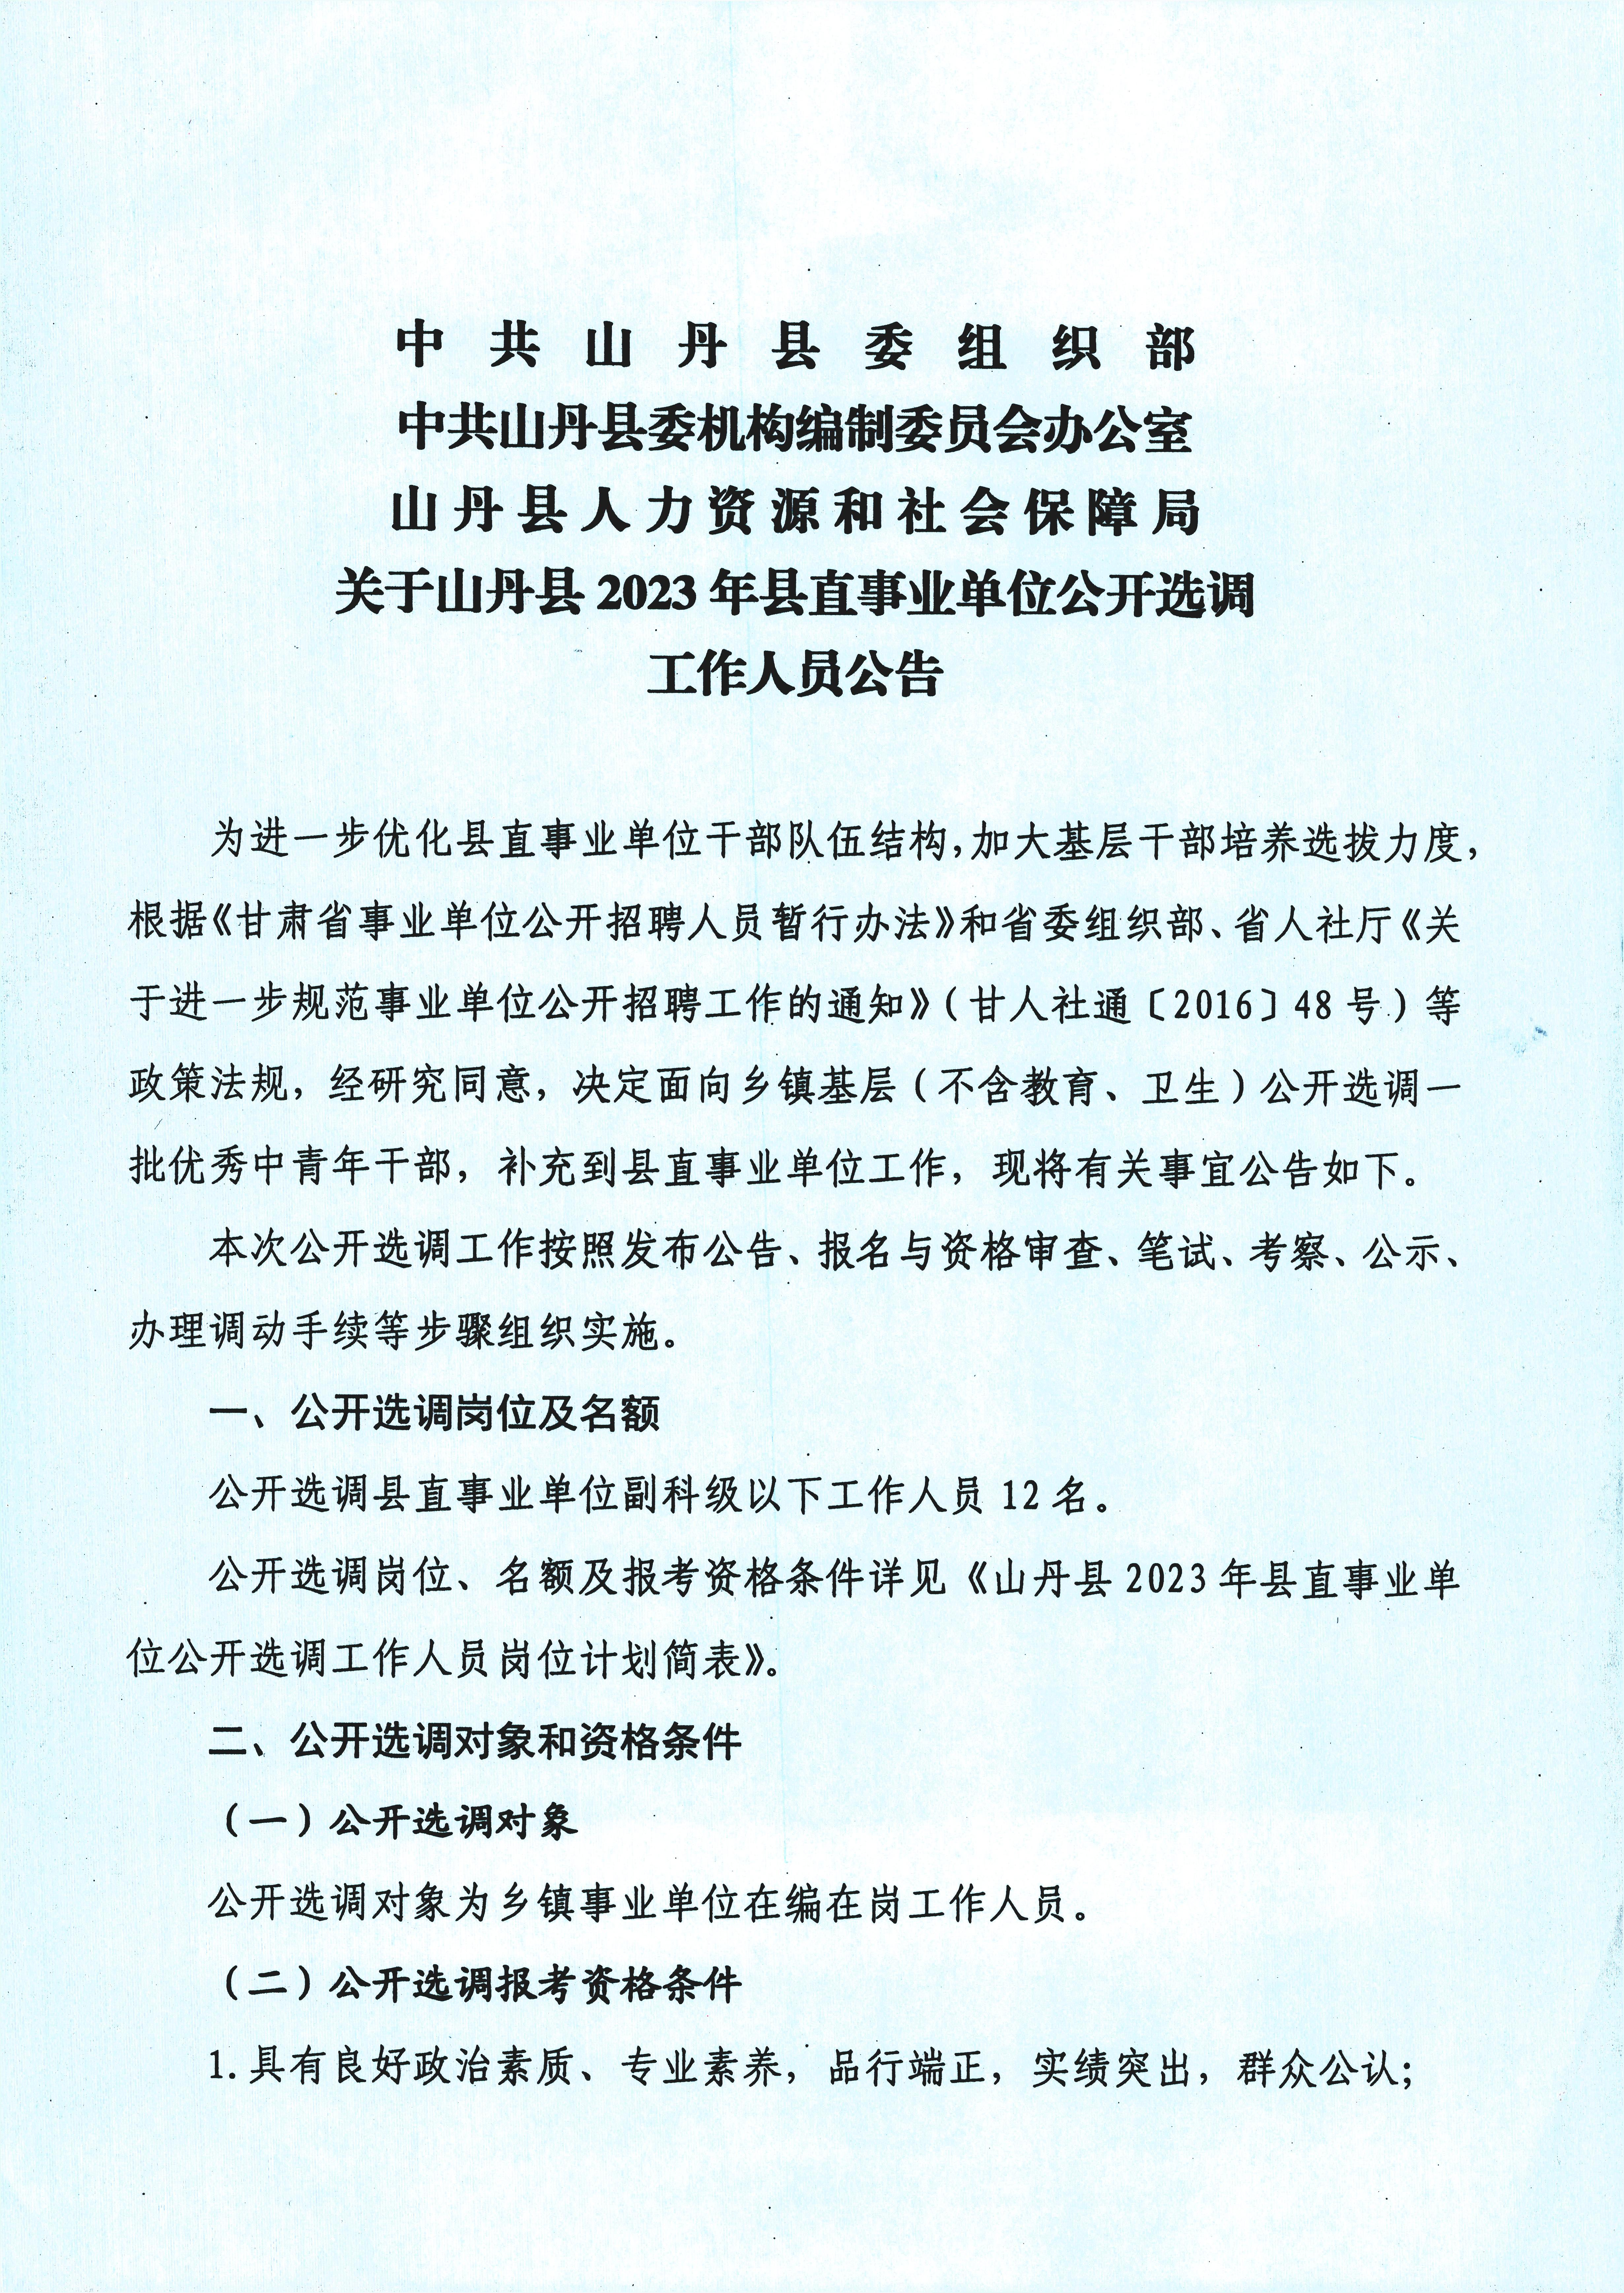 2023年甘肃张掖山丹县县直事业单位选调12人公告